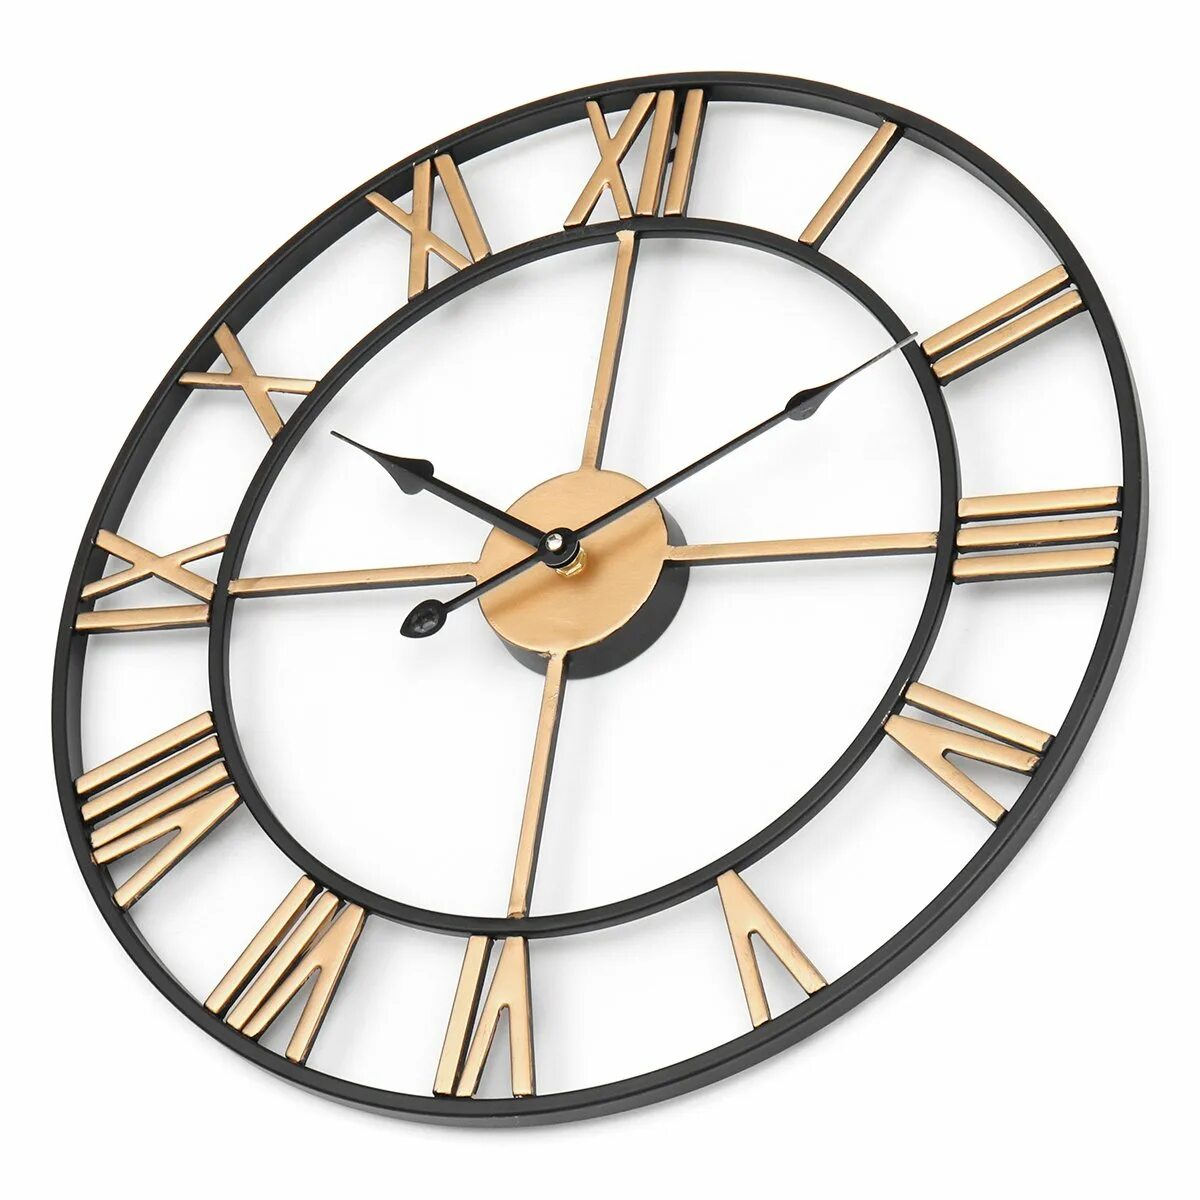 Часы 80 см. Интерьерные часы настенные. Часы настенные металлические. Металлические часы на стену. Часы настенные круглые большие.